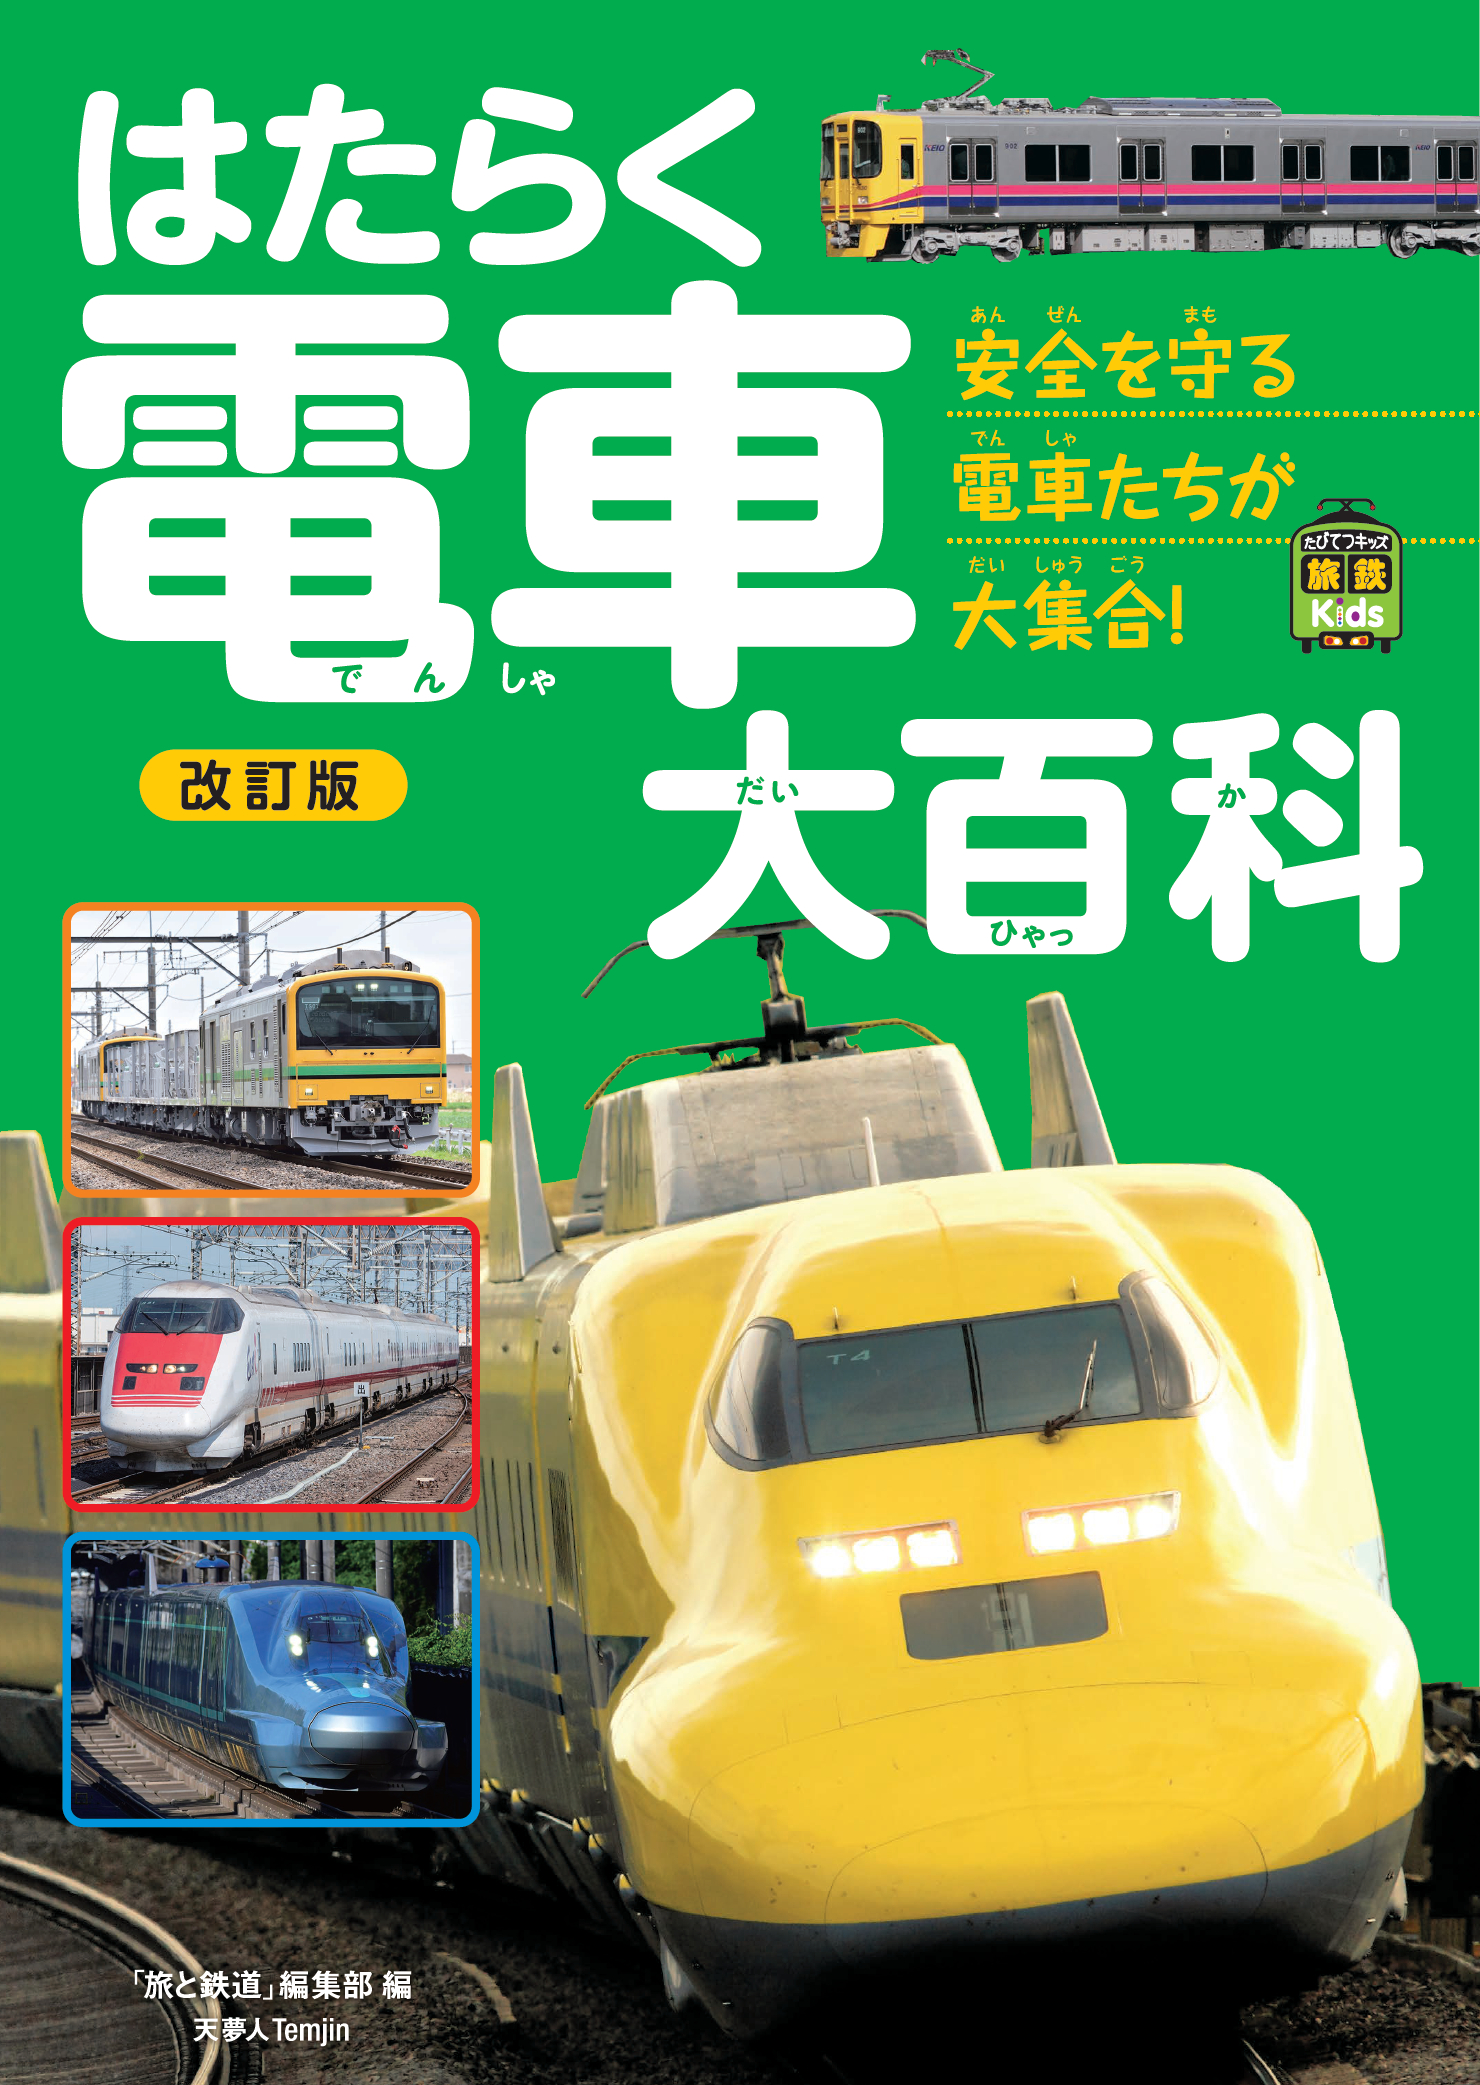 日本の鉄道の安全を守る“はたらく電車”たちが大集合！ 新車両を掲載し